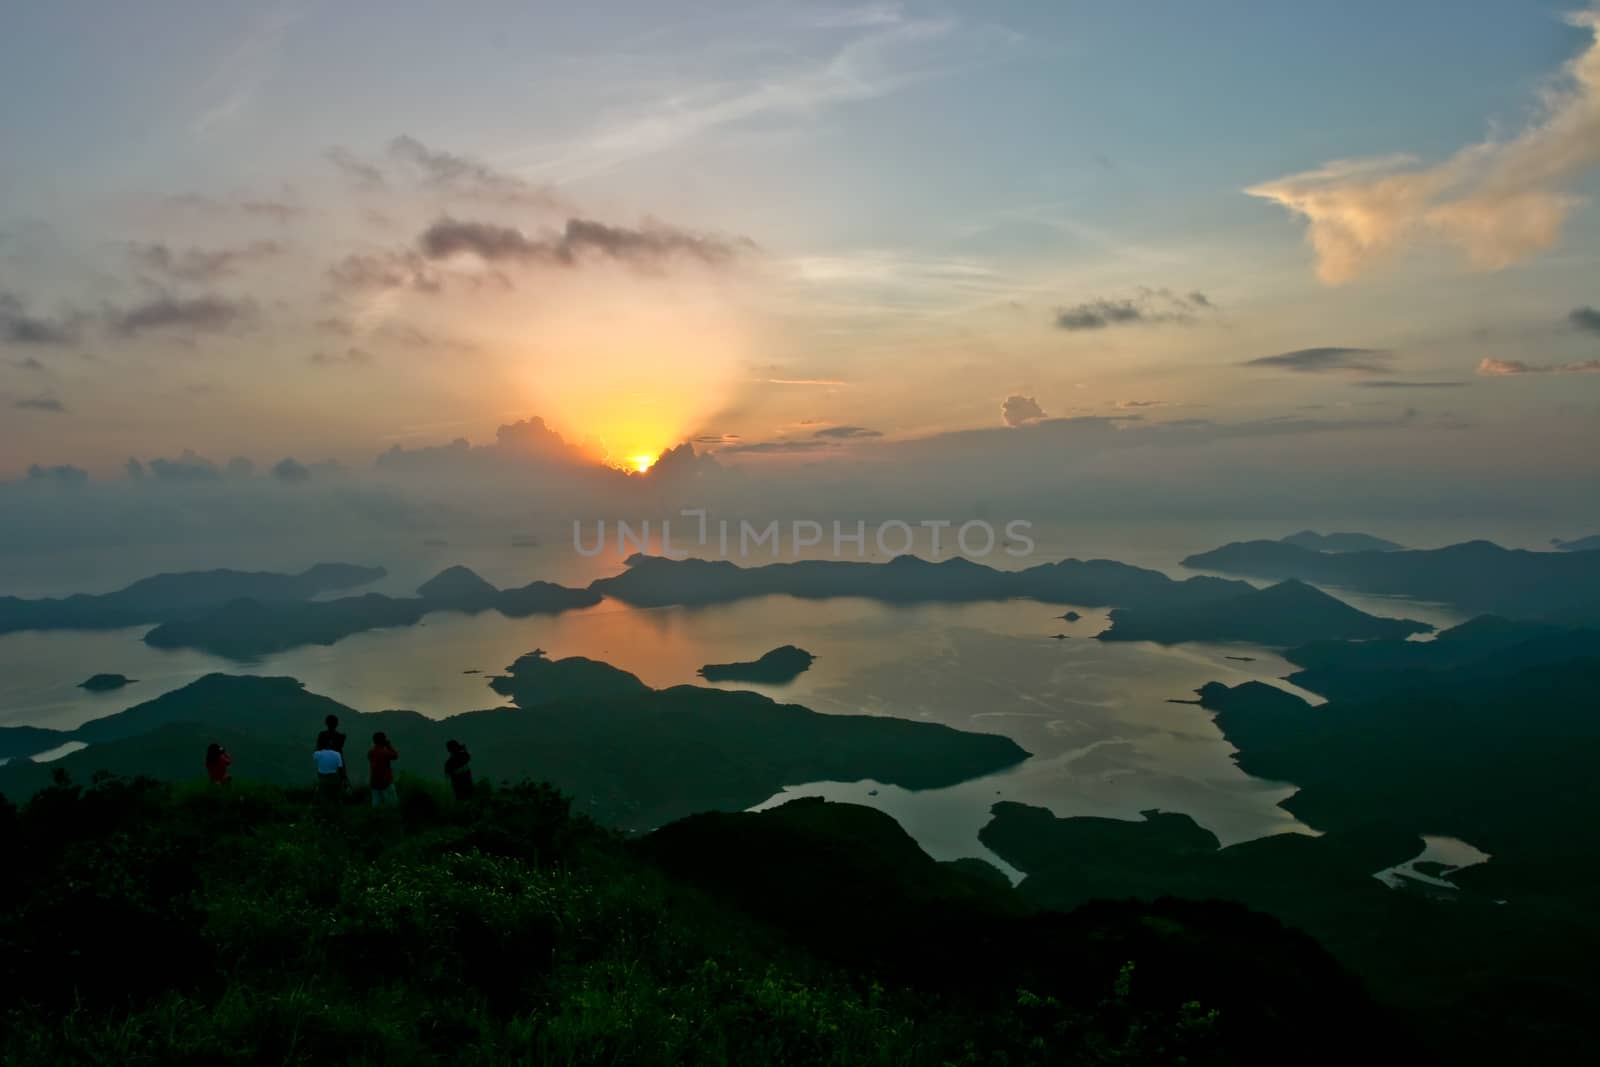 Sunrise in Tiu Tang Lung, Hong Kong, China